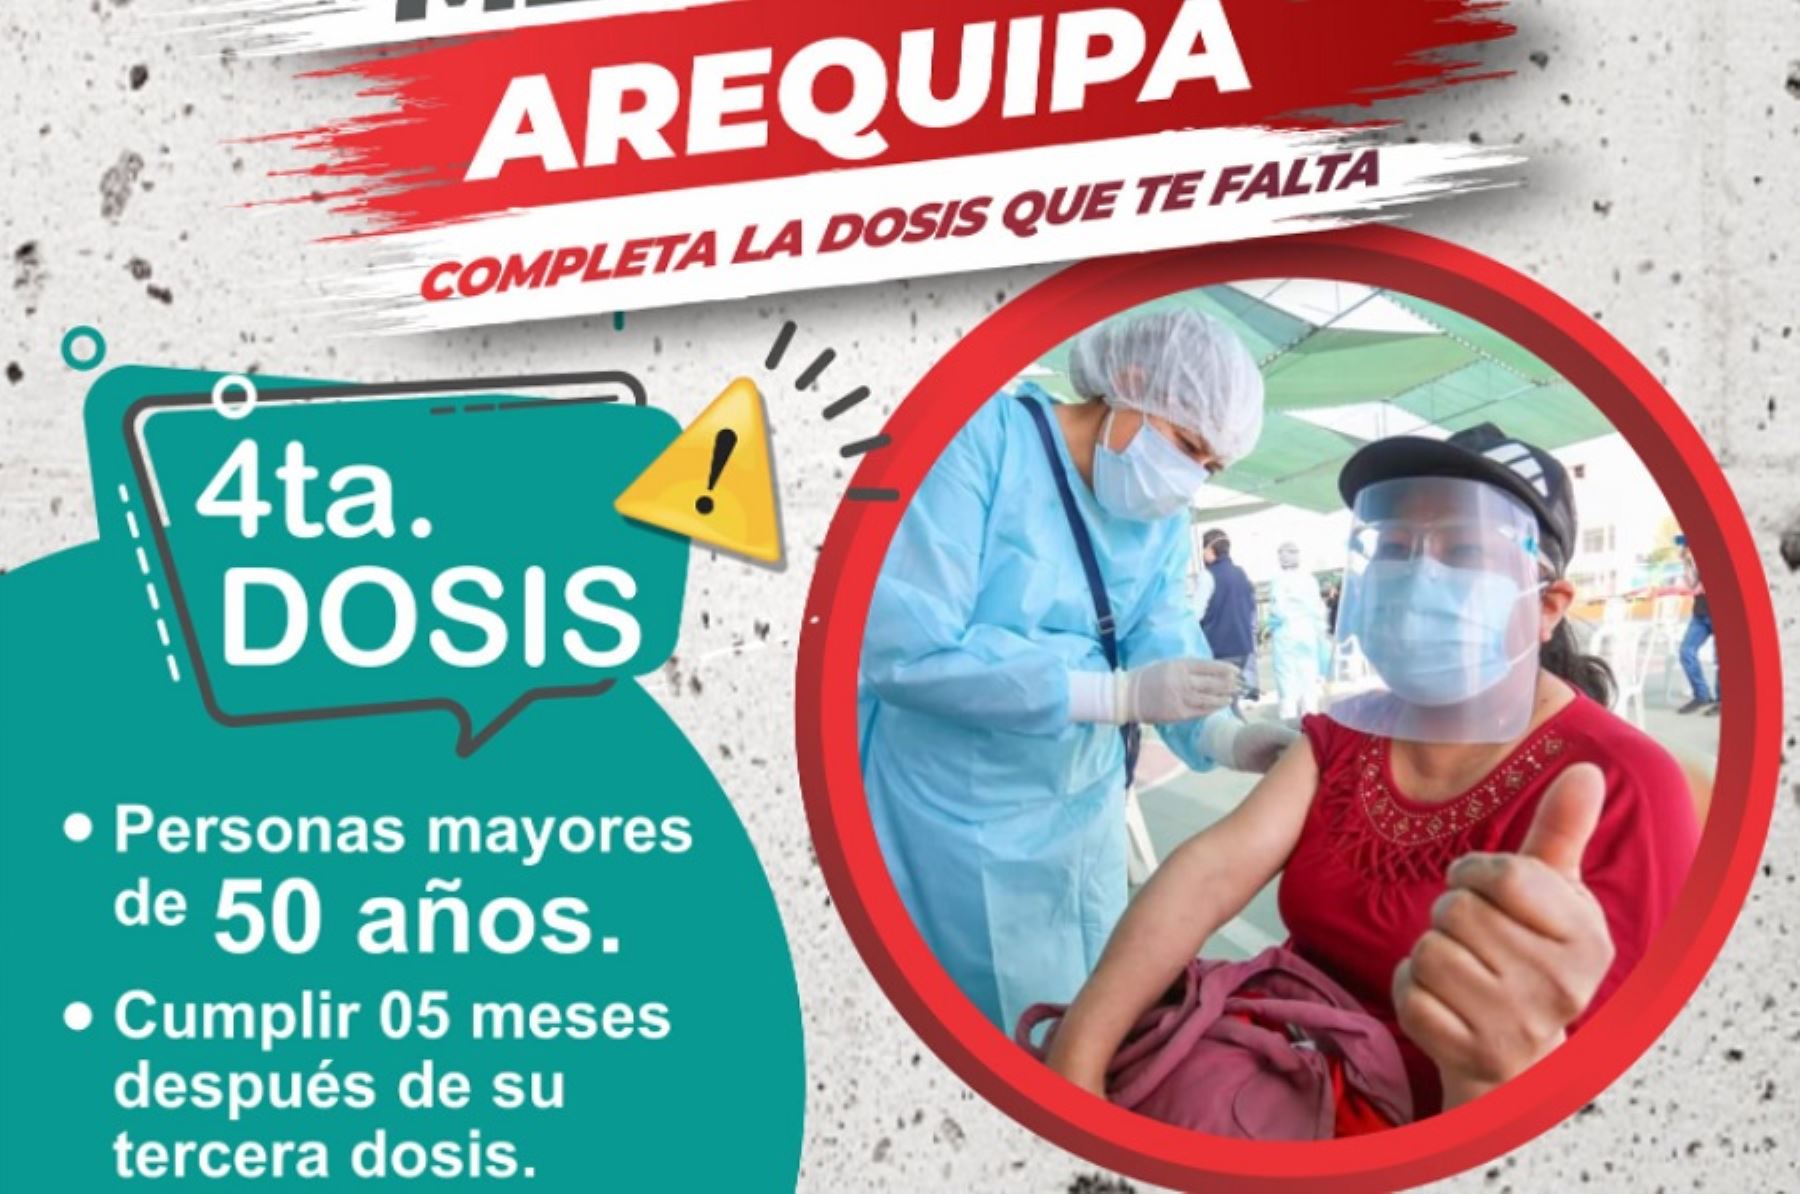 Arequipa: mayores de 50 años reciben desde hoy cuarta dosis de vacuna contra covid-19